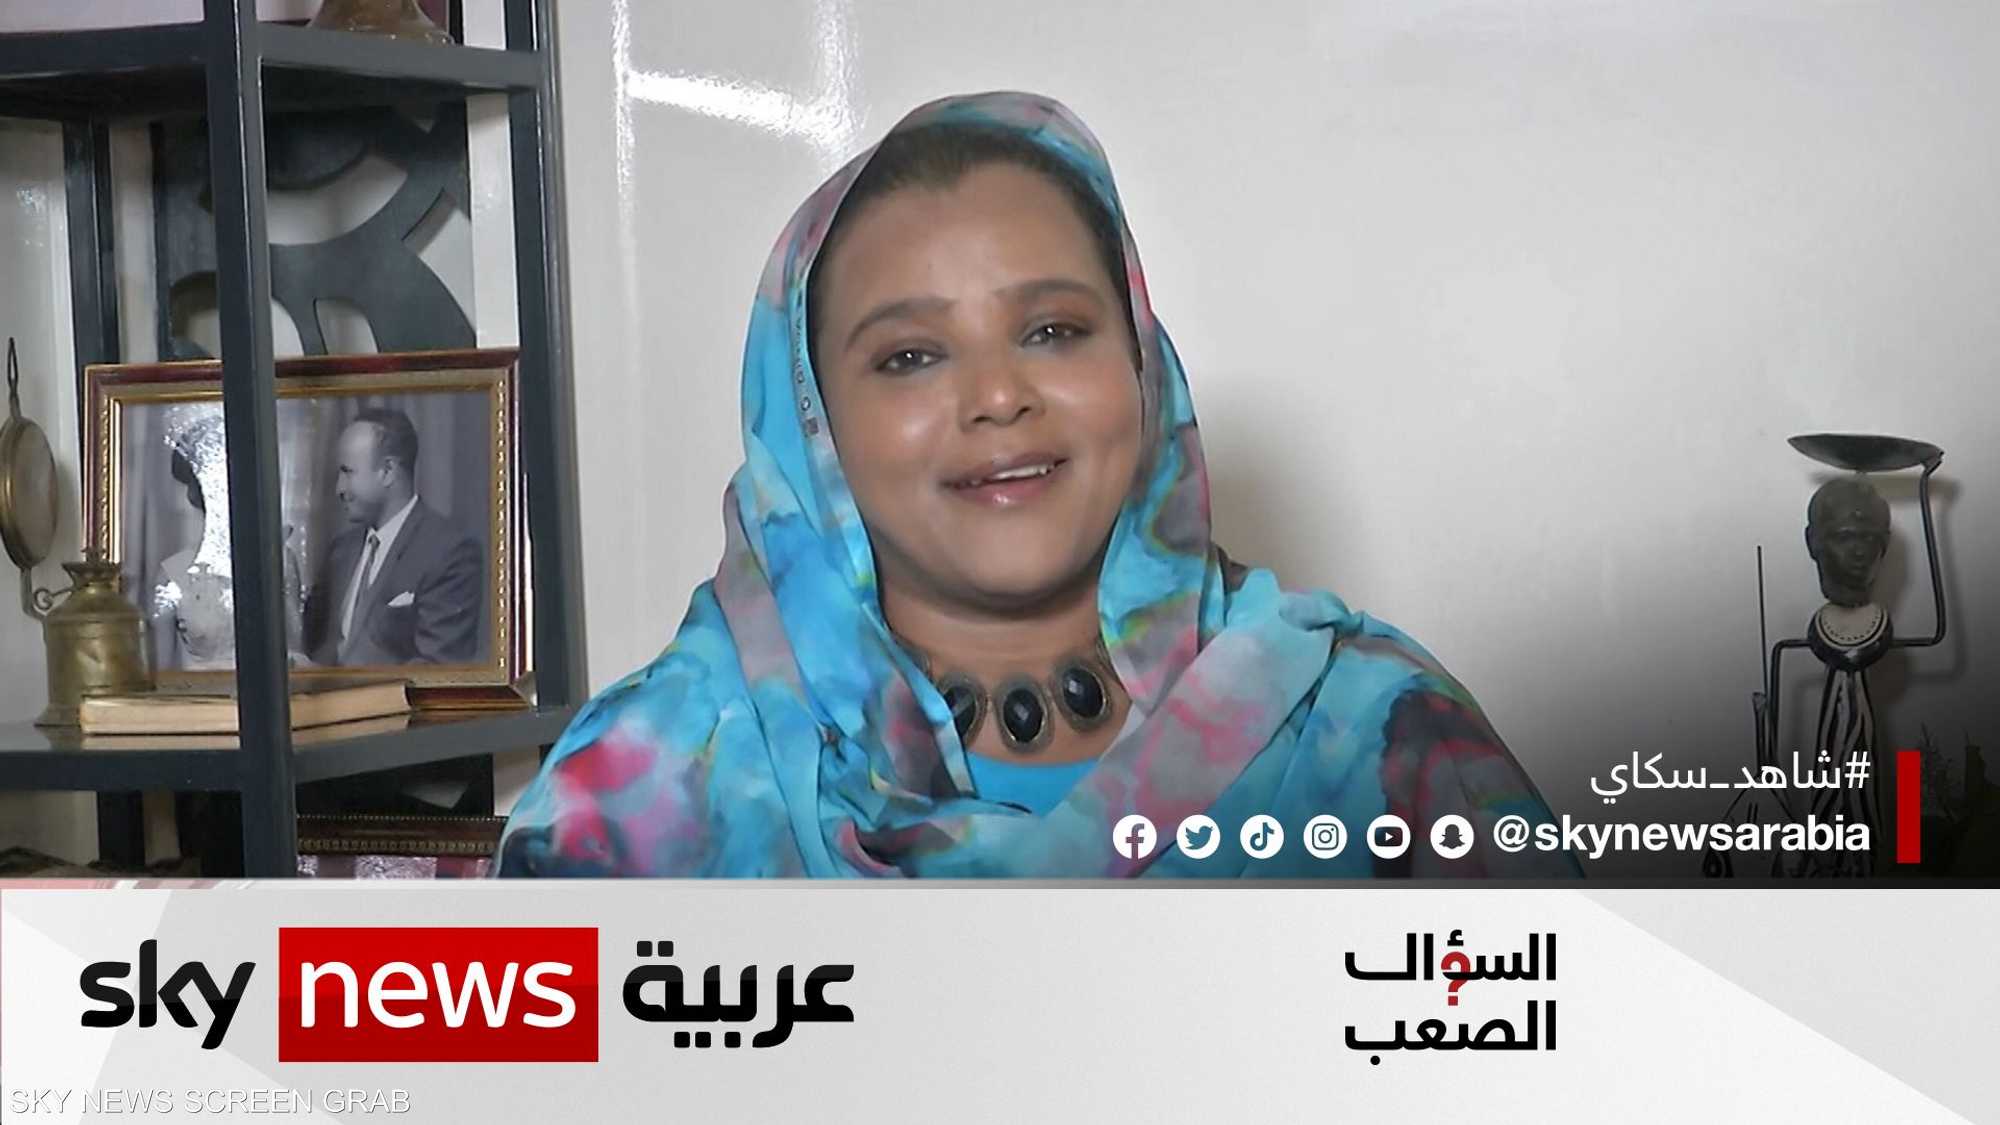 الناشطة السودانية هادية حسب الله: يجب تغيير ثقافة المجتمع